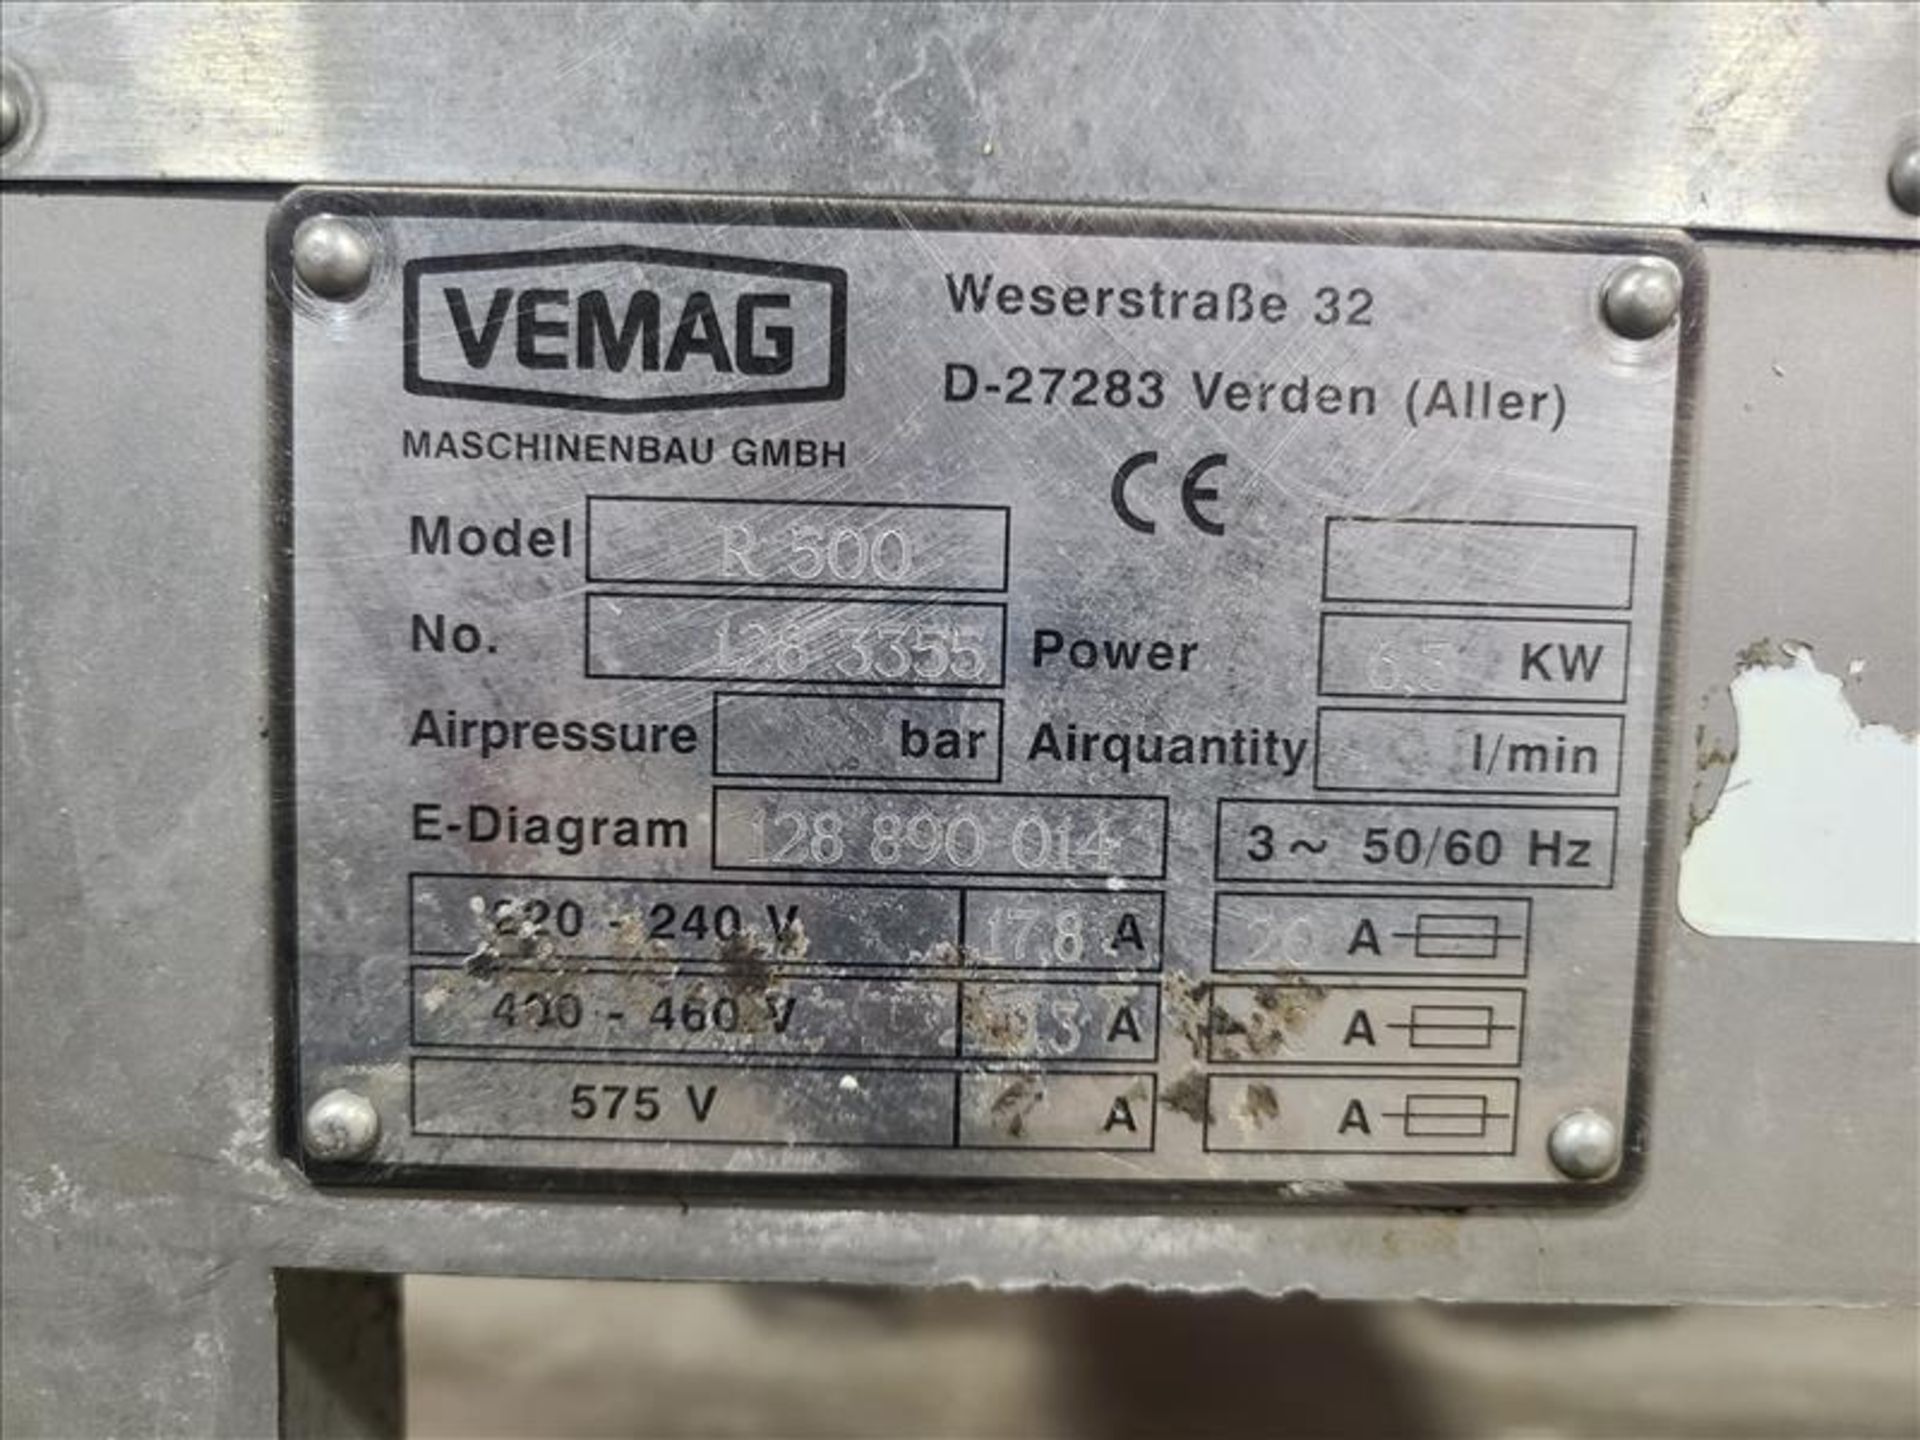 Reiser Vemag Vacuum Filler/ Sausage Stuffer, mod. R500, ser. no. 128 3355, 220-240 volts, 3 phase, - Image 6 of 6